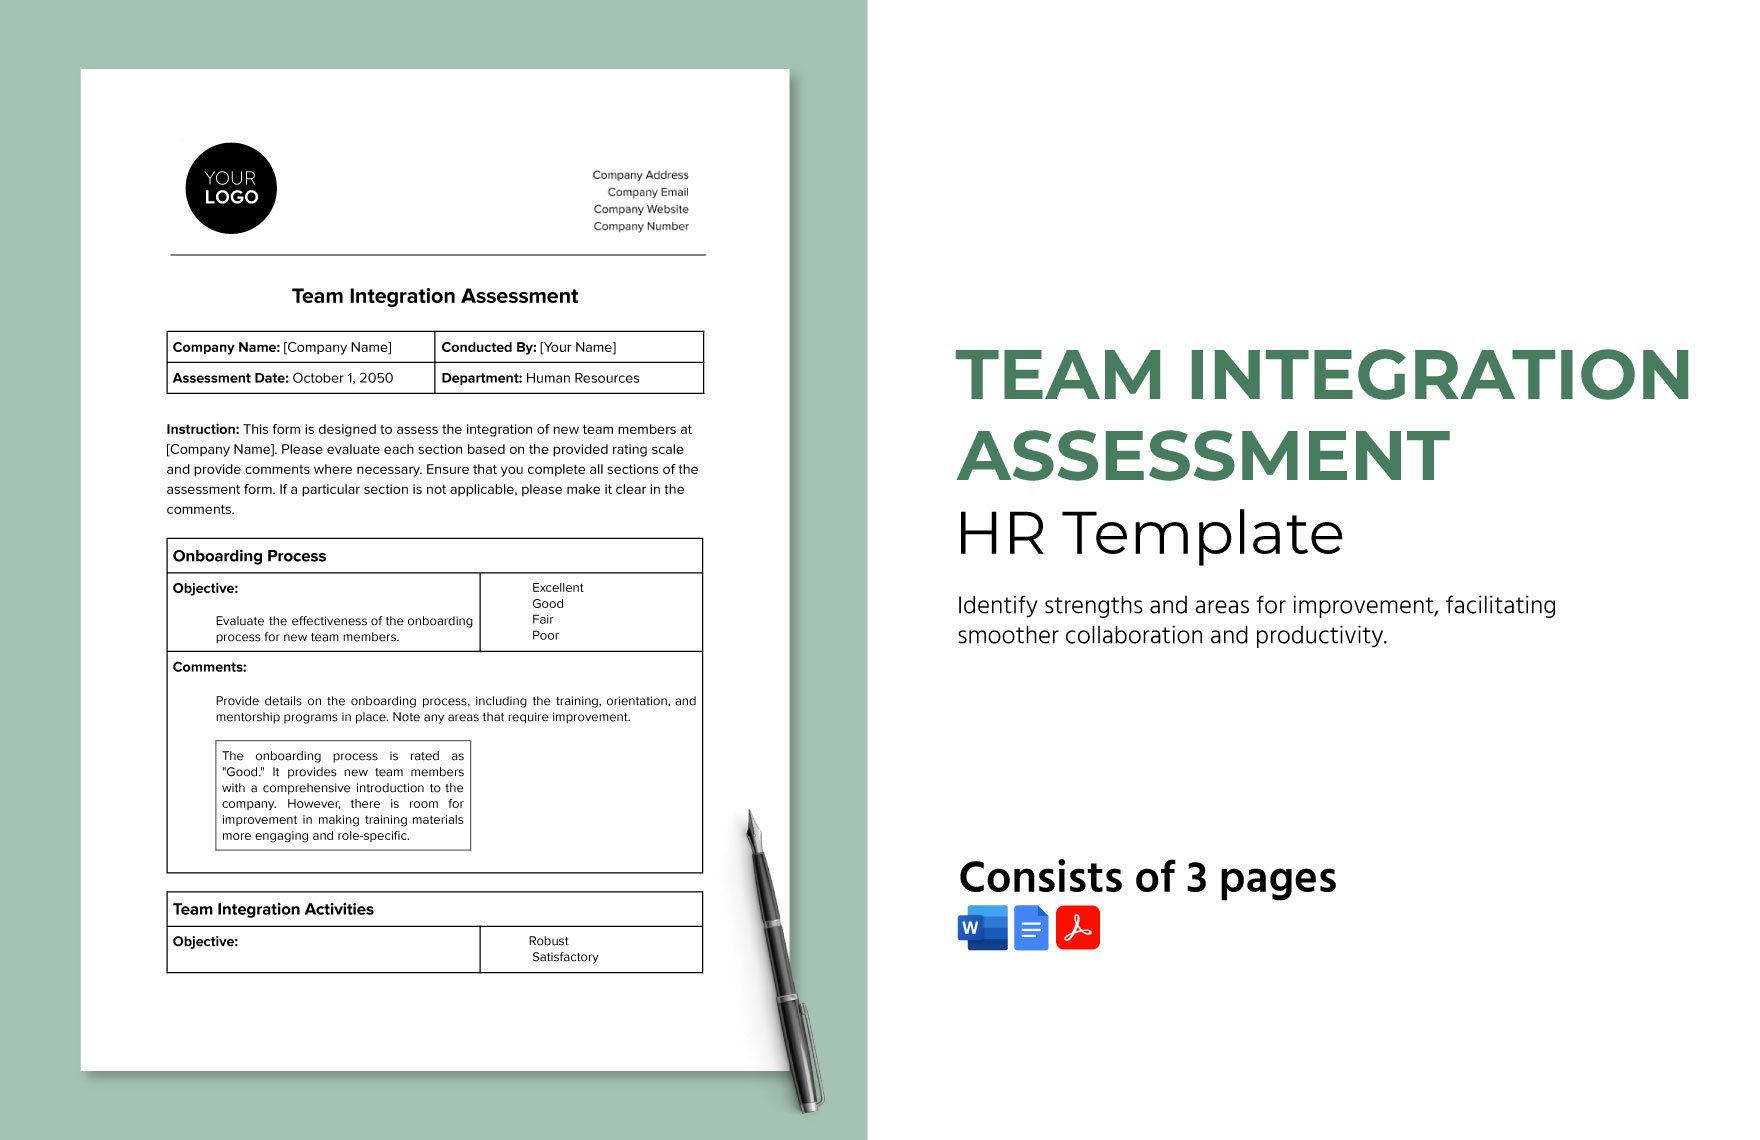 Team Integration Assessment HR Template